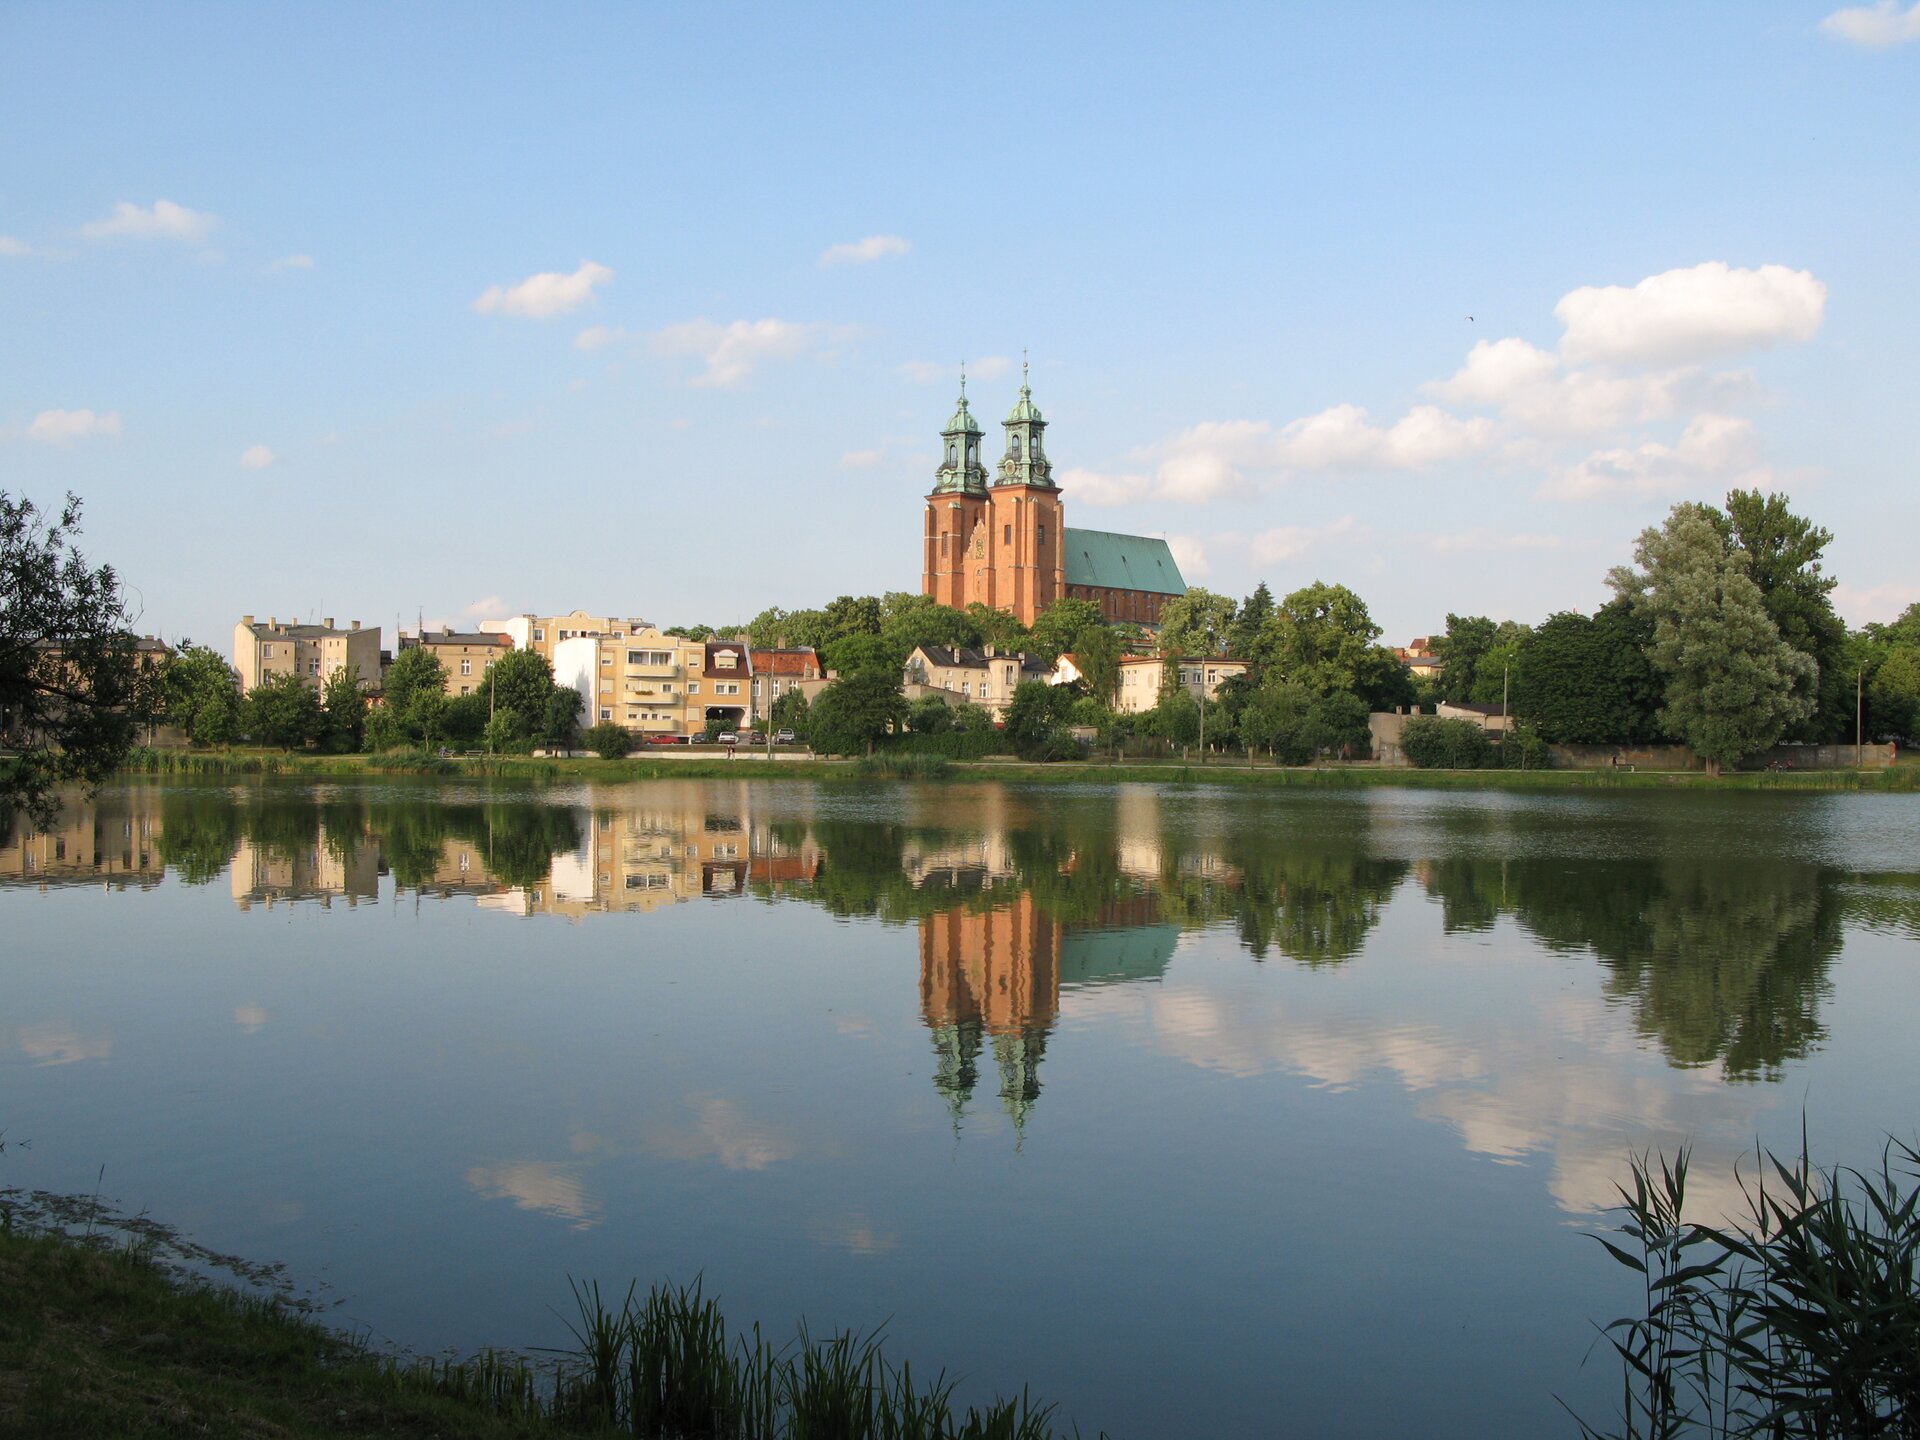 Na zdjęciu wysoki kościół z dwoma wieżami i zabudowa miejska nad brzegiem rzeki.